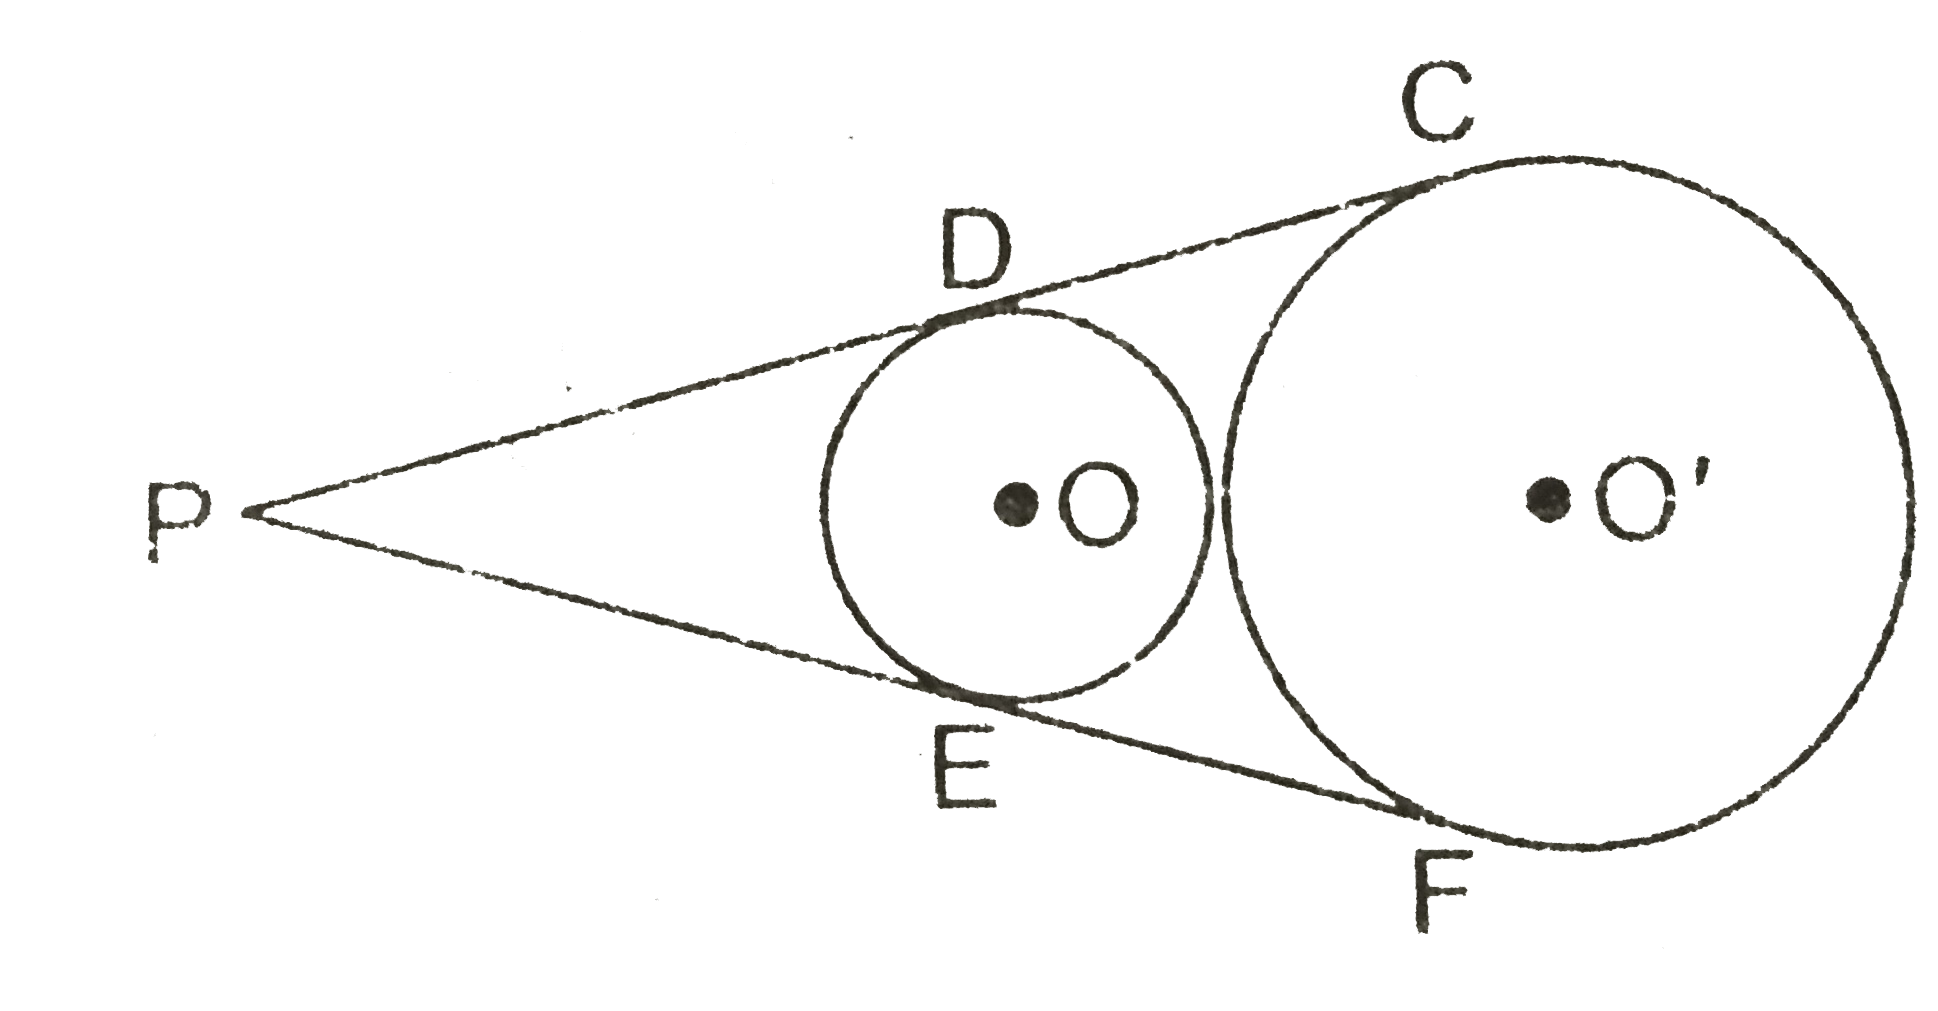 दिये गये चित्र में, बाह्रा स्पर्श करने वाले दो वृत्तों कि उभयनिष्ठ अनुस्पर्शी रेखाएँ PDC  तथा PEF खींची गयी हैं जो वृत्तों को क्रमशः D व C तथा E व F  पर स्पर्श करती हैं। सिद्ध कीजिए - DC = EF     (अथवा)  चित्र में, दो वृत्तों की उभयनिष्ठ स्पर्श रेखाएँ PDC और PFE हैं। सिद्ध कीजिए कि CD = EF     (अथवा) चित्र में, दो वृत जिनके केन्द्र O और O हैं, बाह्यतः स्पर्श  करते हैं। इन वृत्तों कि दो उभयनिष्ठ अनुस्पर्शी रेखाएँ PDC  तथा PEF खींची गयी हैं जो वृत्तों को क्रमशः D व C तथा E व F बिन्दुओं पर स्पर्श करती हैं। सिद्ध कीजिए कि DC = EF